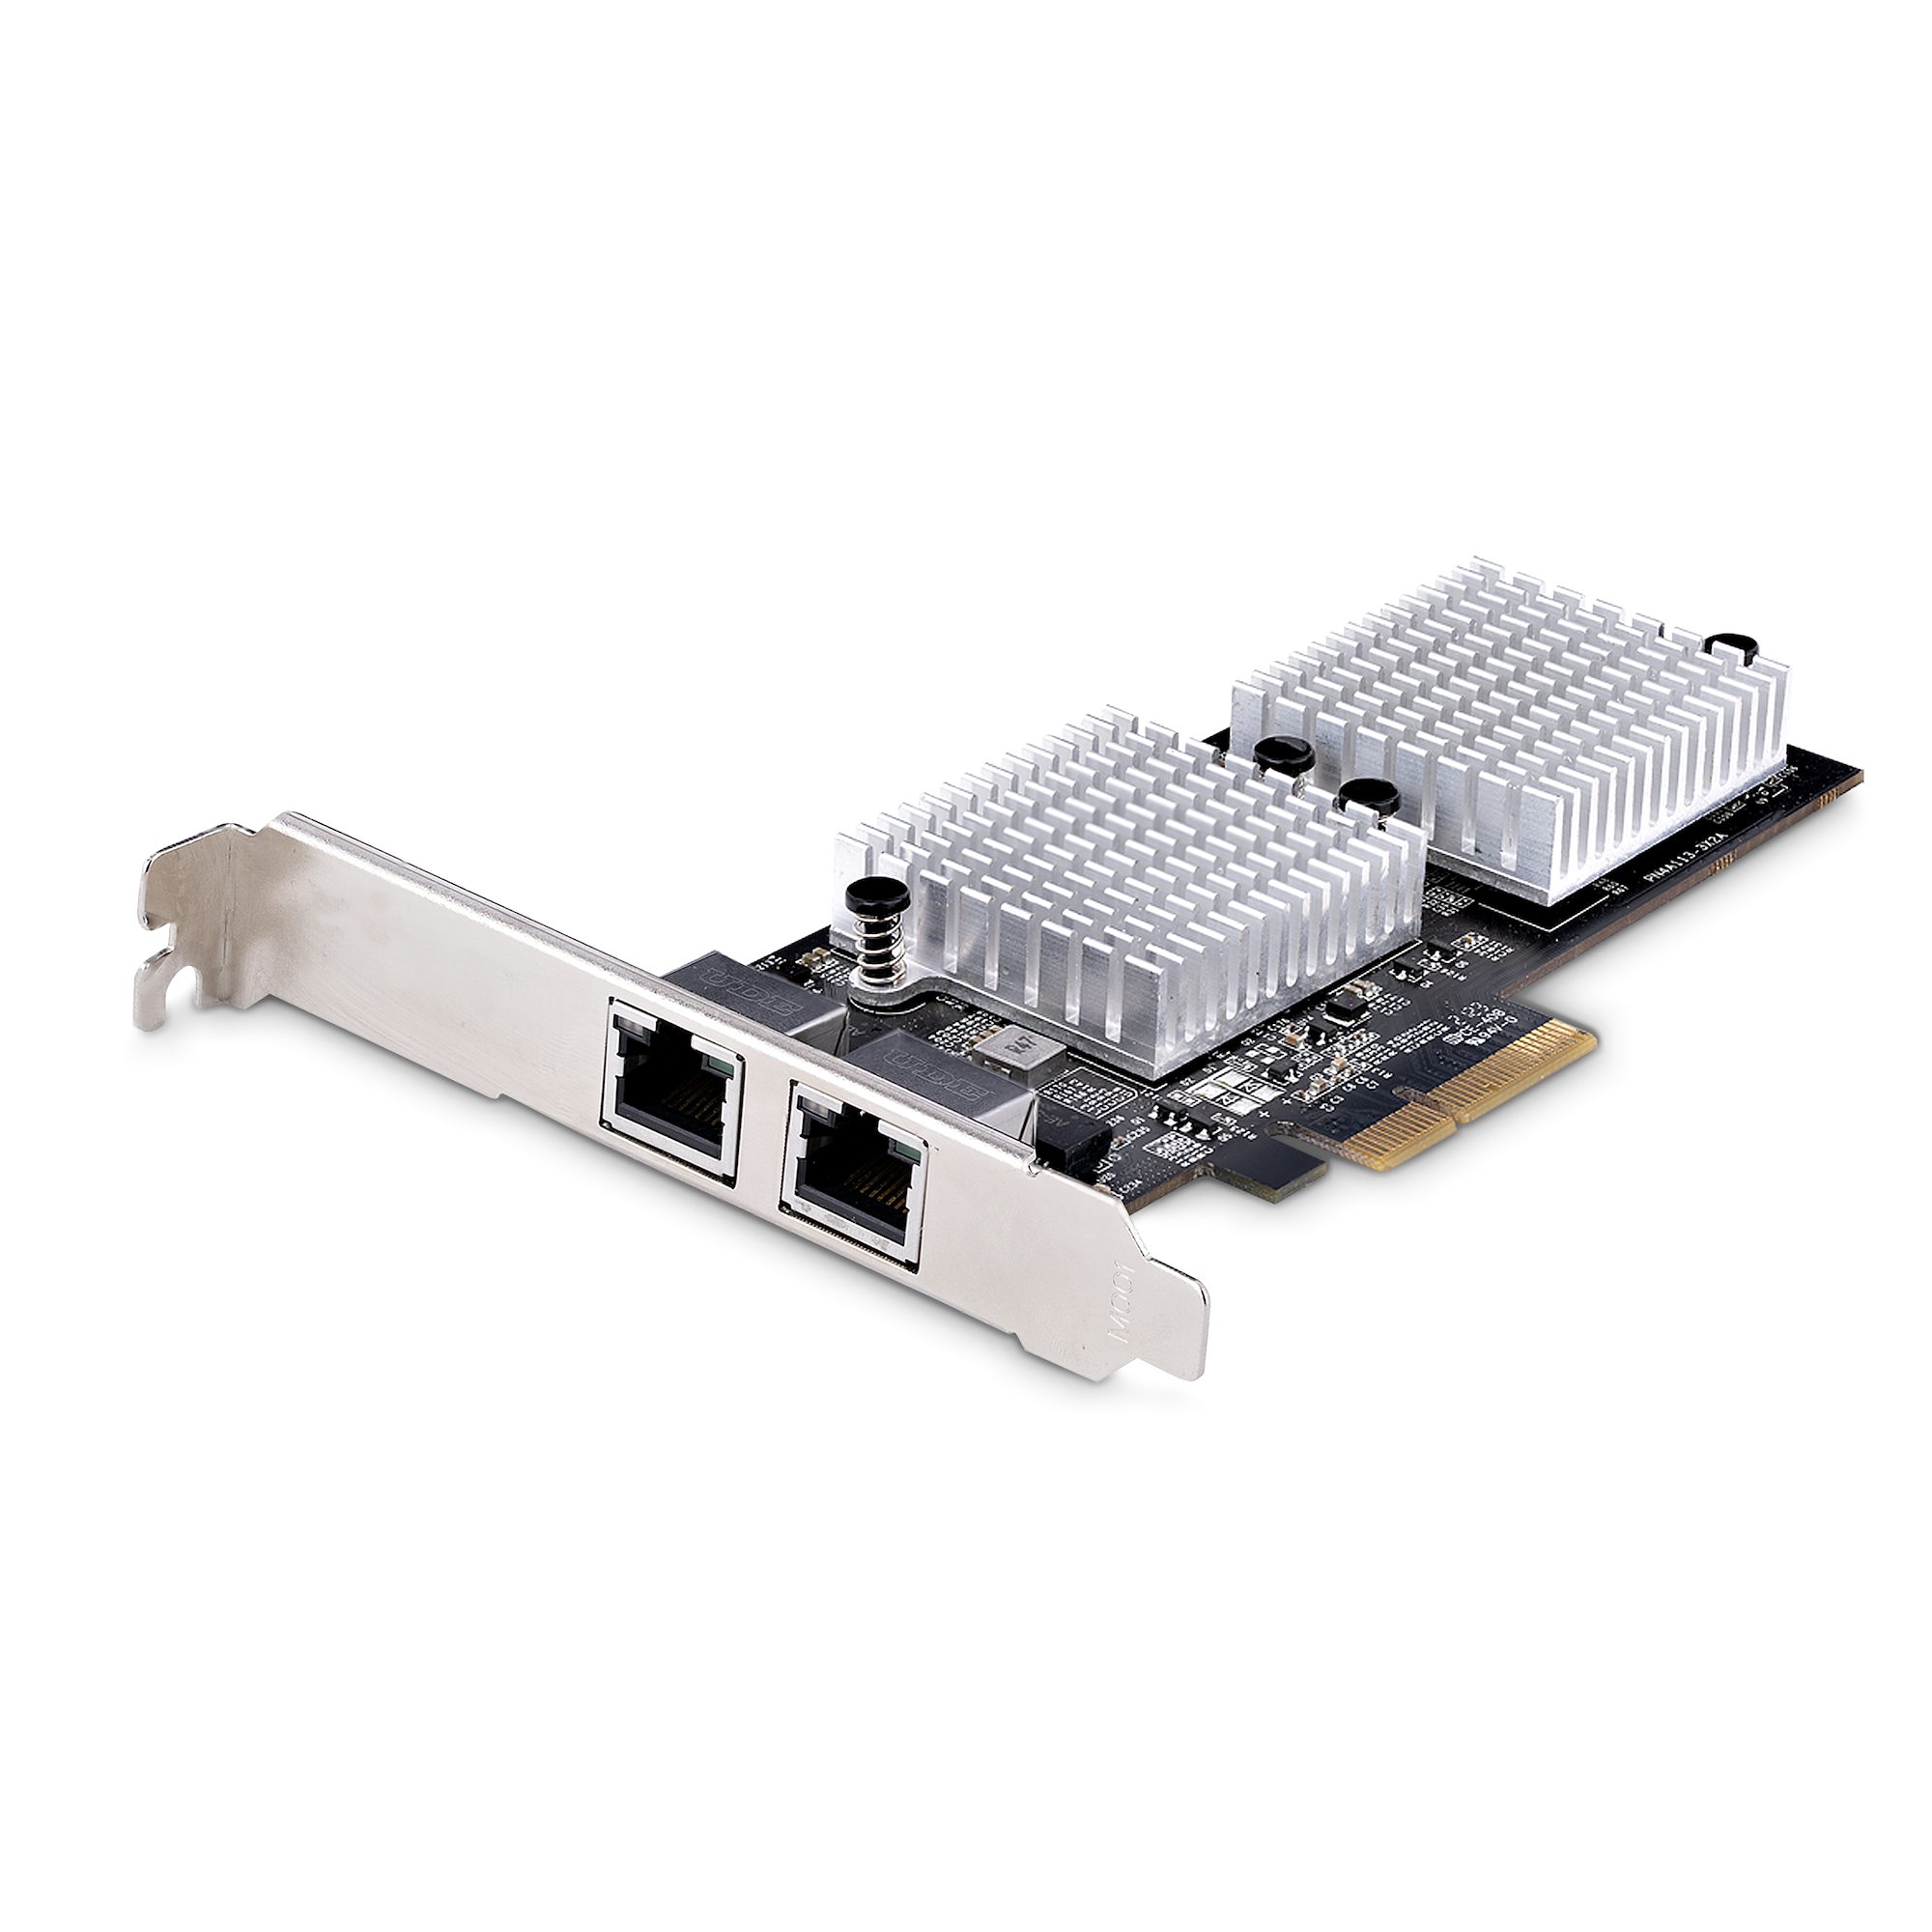 2ポート10GBase-T増設PCIeイーサネットLANカード NBASE-T対応 5スピード:10G 5G 2.5G 1G 100Mbps対応NICカード スターテック 2年保証